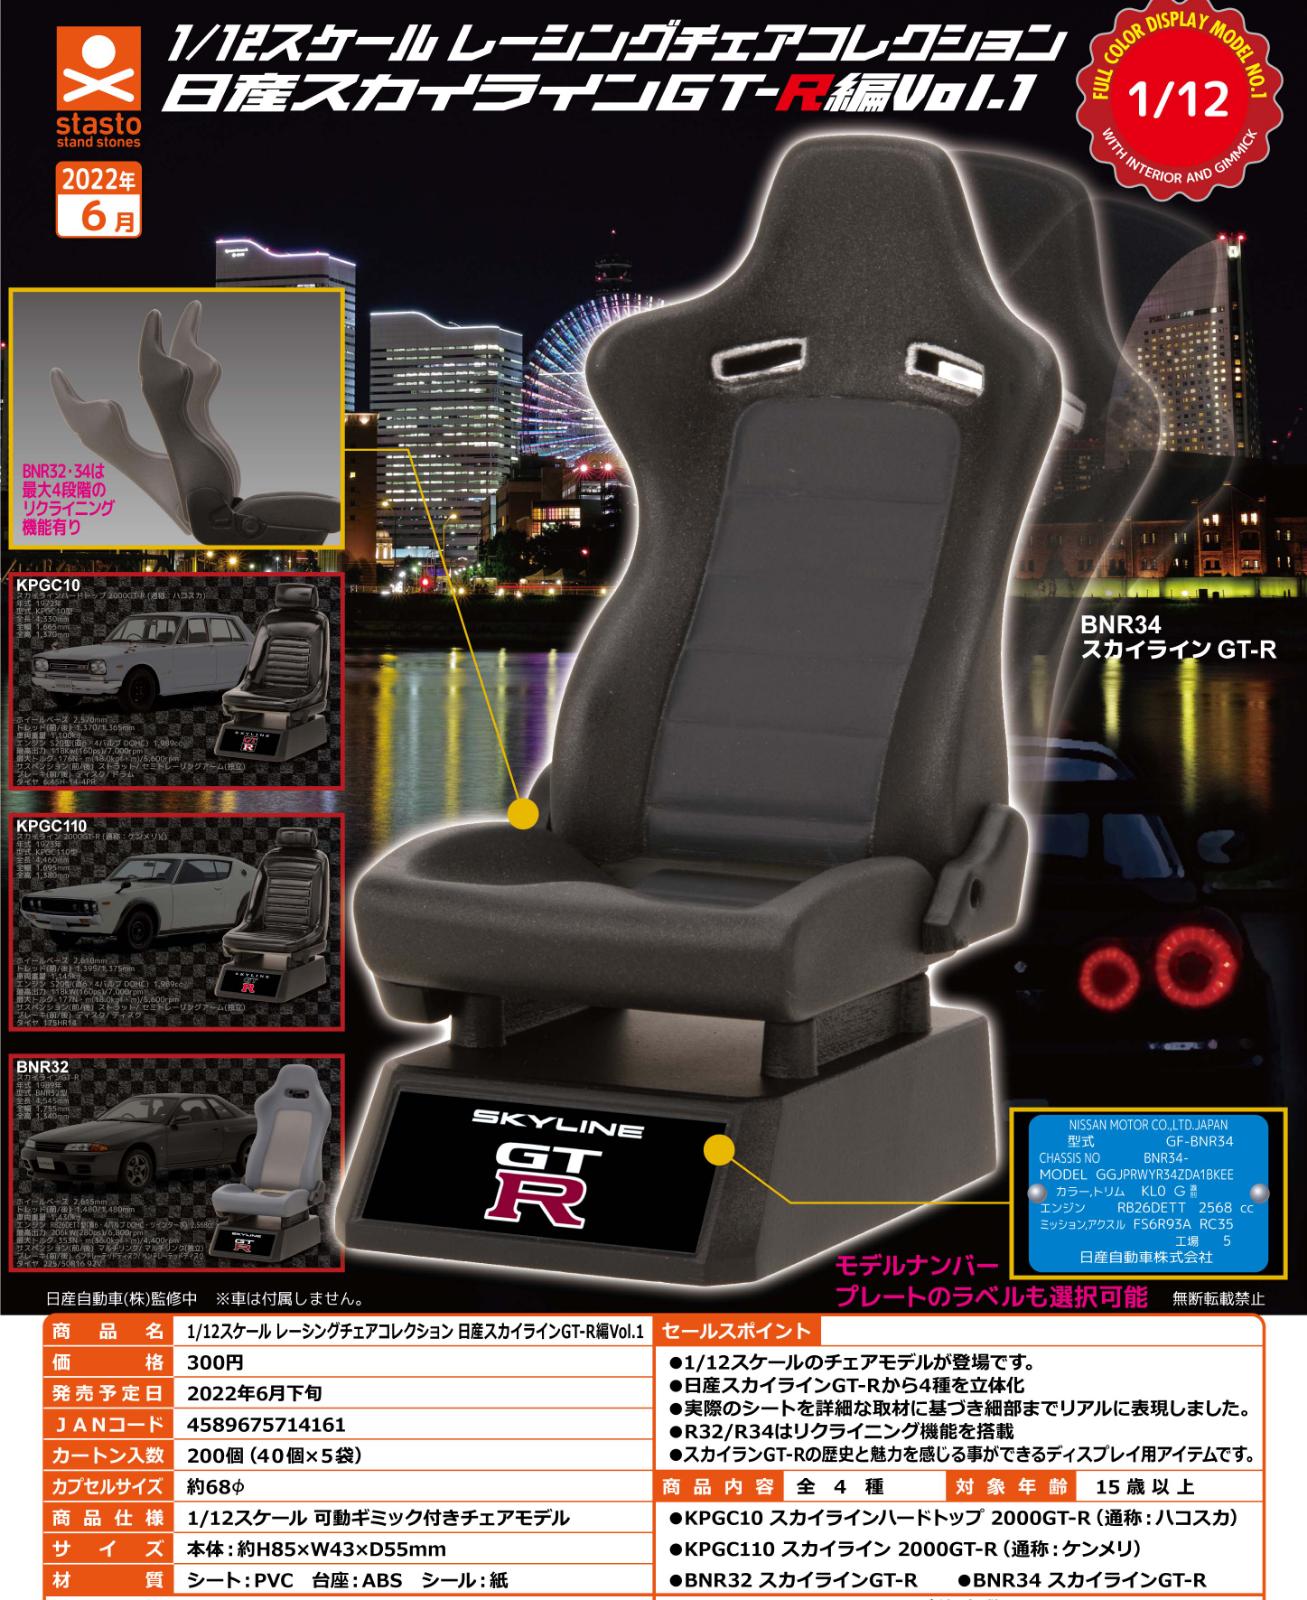 Pre-order HK armrest